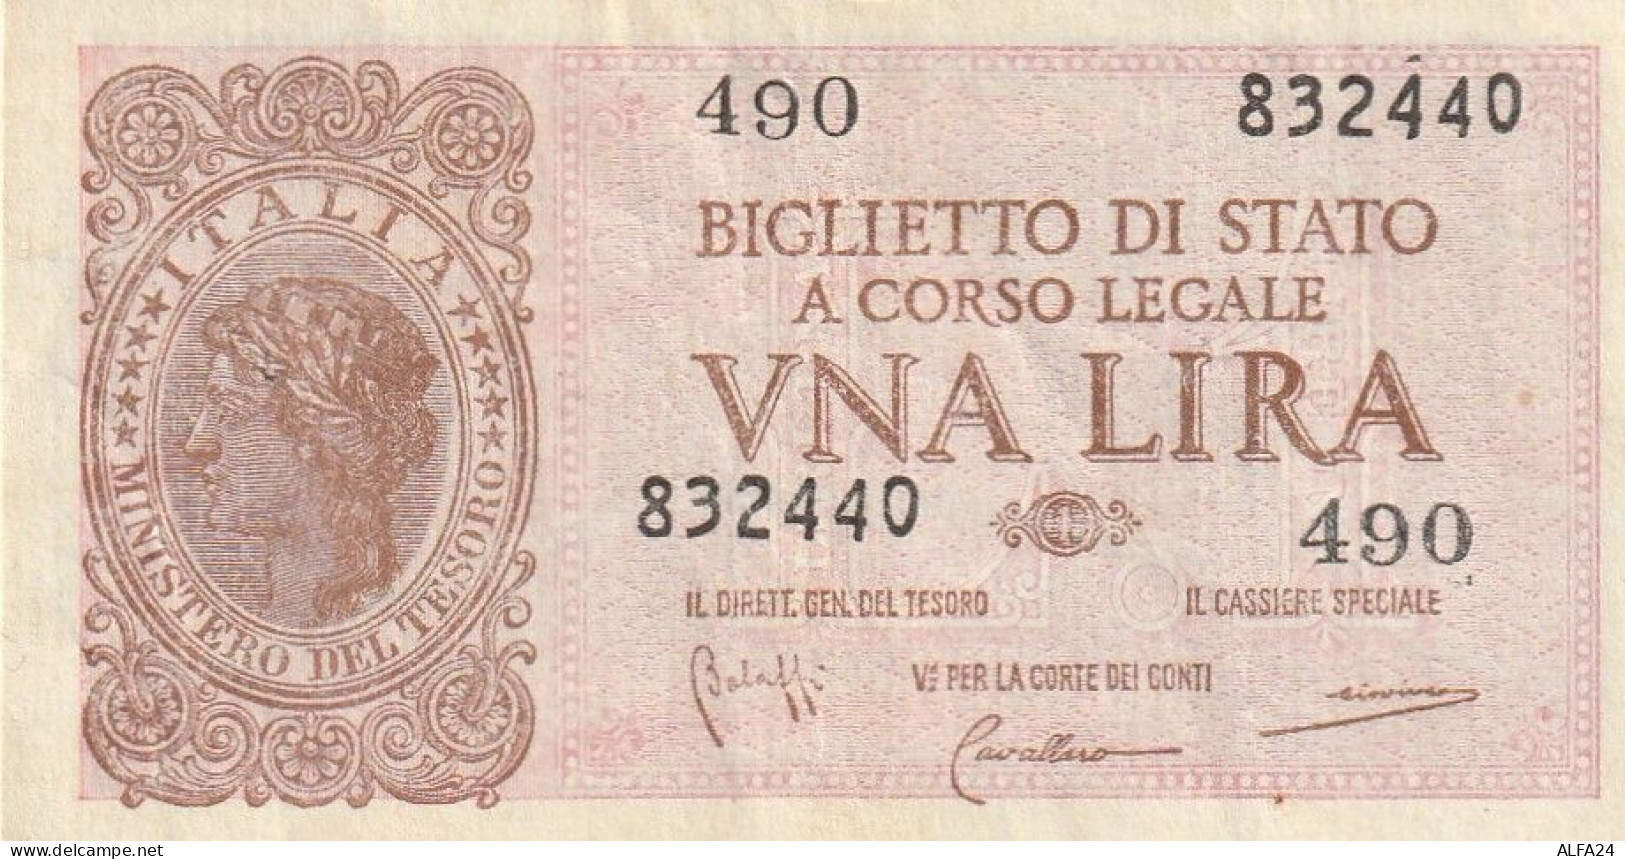 BANCONOTA BIGLIETTO DI STATO ITALIA 1 LIRA VF  (B_350 - Italië – 1 Lira